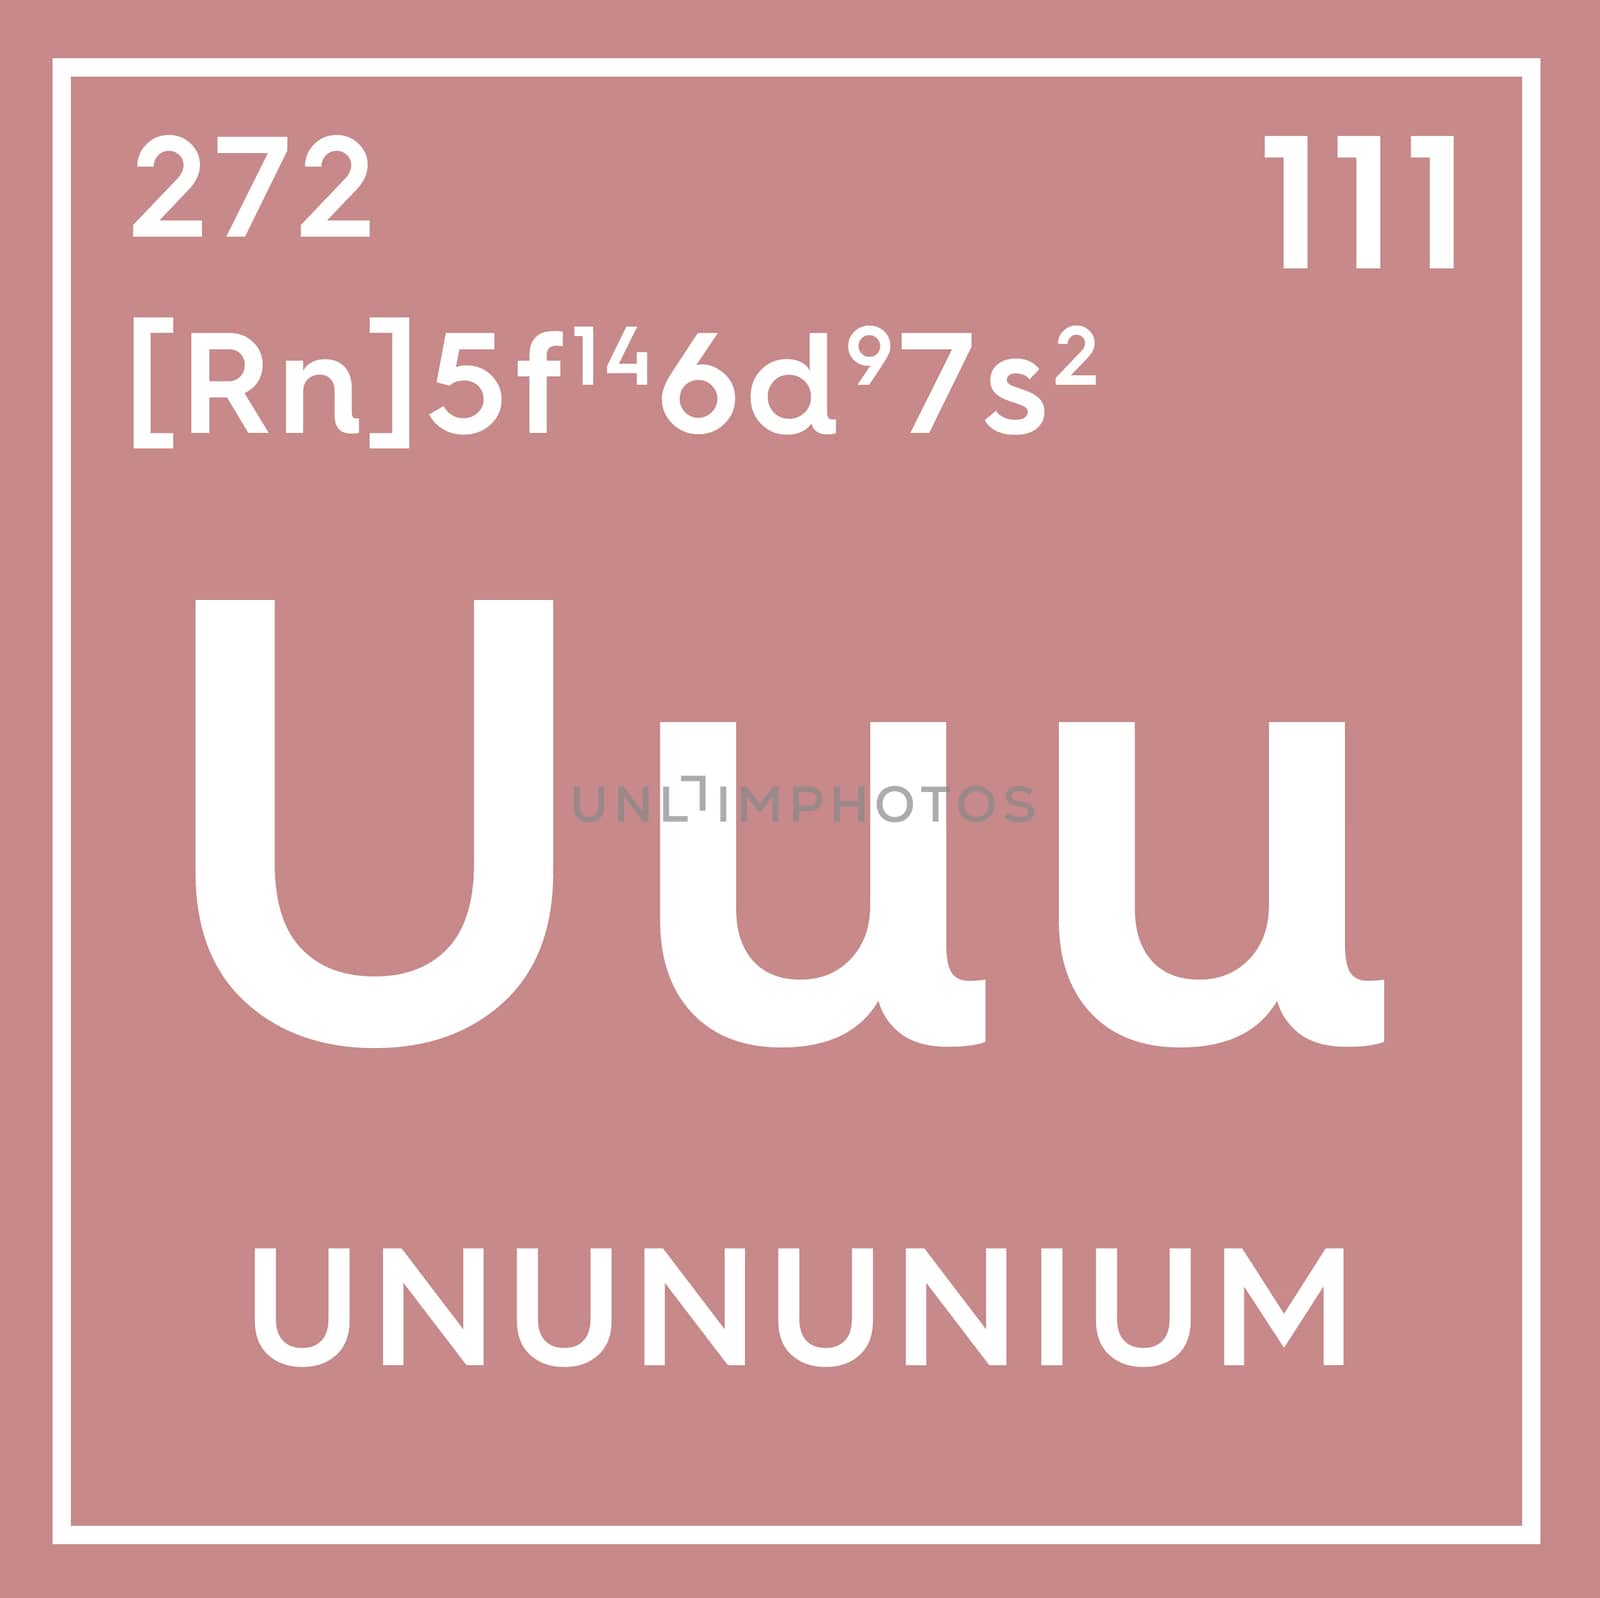 Unununium. Transition metals. Chemical Element of Mendeleev's Periodic Table. Unununium in square cube creative concept. 3D illustration.